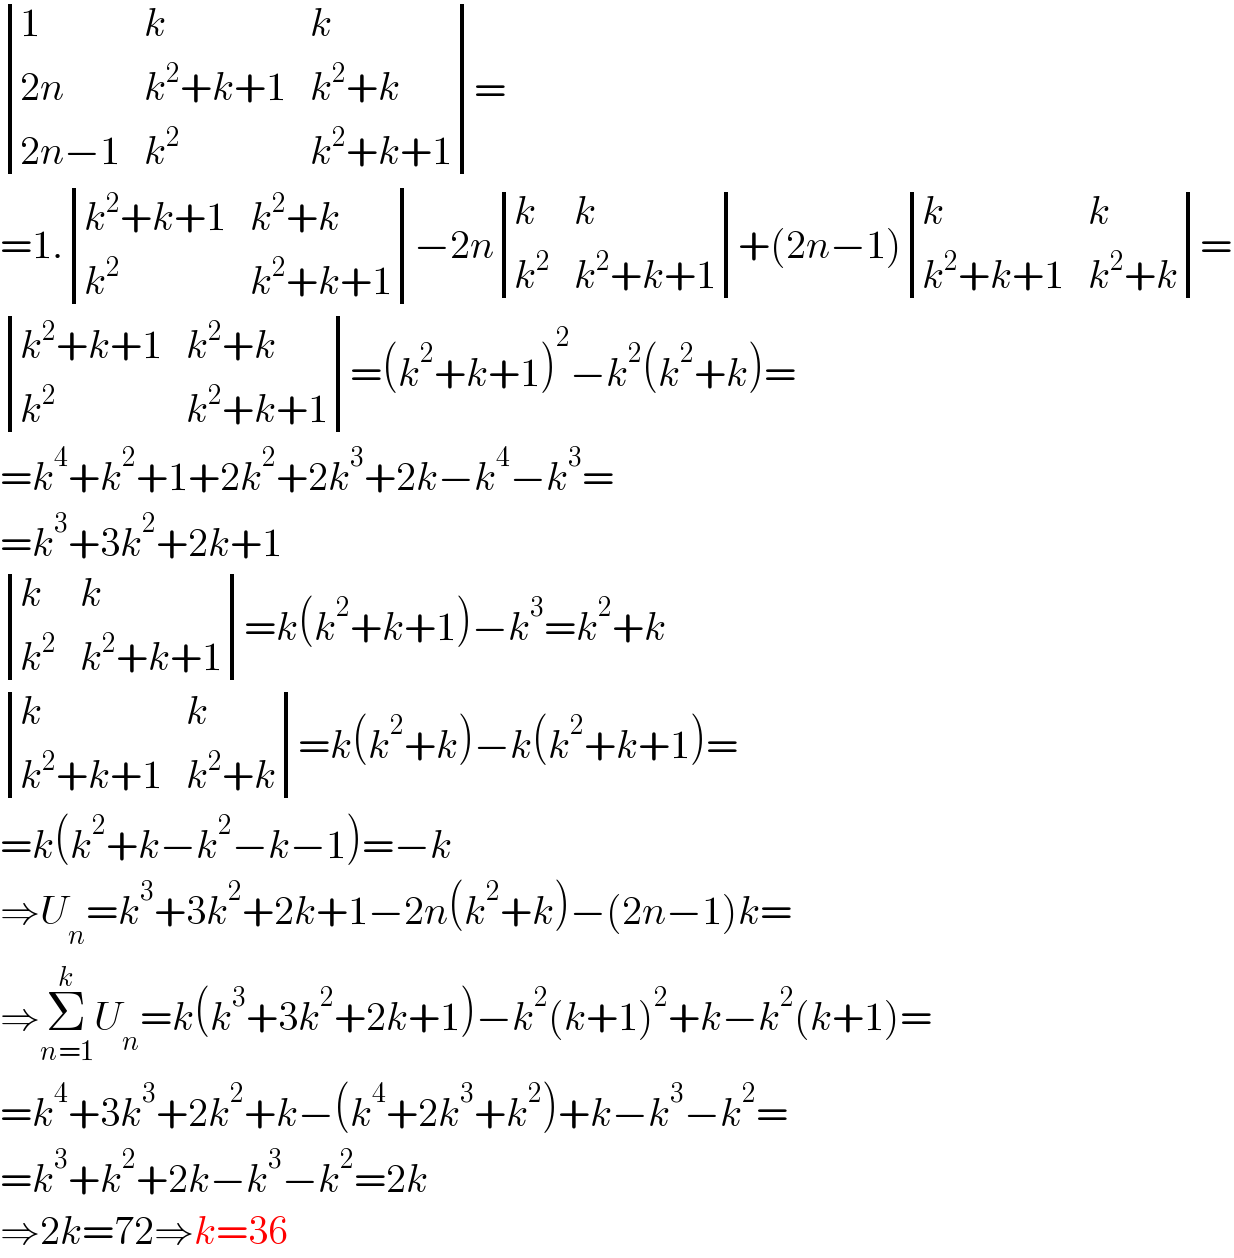  determinant ((1,k,k),((2n),(k^2 +k+1),(k^2 +k)),((2n−1),k^2 ,(k^2 +k+1)))=  =1. determinant (((k^2 +k+1),(k^2 +k)),(k^2 ,(k^2 +k+1)))−2n determinant ((k,k),(k^2 ,(k^2 +k+1)))+(2n−1) determinant ((k,k),((k^2 +k+1),(k^2 +k)))=   determinant (((k^2 +k+1),(k^2 +k)),(k^2 ,(k^2 +k+1)))=(k^2 +k+1)^2 −k^2 (k^2 +k)=  =k^4 +k^2 +1+2k^2 +2k^3 +2k−k^4 −k^3 =  =k^3 +3k^2 +2k+1   determinant ((k,k),(k^2 ,(k^2 +k+1)))=k(k^2 +k+1)−k^3 =k^2 +k   determinant ((k,k),((k^2 +k+1),(k^2 +k)))=k(k^2 +k)−k(k^2 +k+1)=  =k(k^2 +k−k^2 −k−1)=−k  ⇒U_n =k^3 +3k^2 +2k+1−2n(k^2 +k)−(2n−1)k=  ⇒Σ_(n=1) ^k U_n =k(k^3 +3k^2 +2k+1)−k^2 (k+1)^2 +k−k^2 (k+1)=  =k^4 +3k^3 +2k^2 +k−(k^4 +2k^3 +k^2 )+k−k^3 −k^2 =  =k^3 +k^2 +2k−k^3 −k^2 =2k  ⇒2k=72⇒k=36  